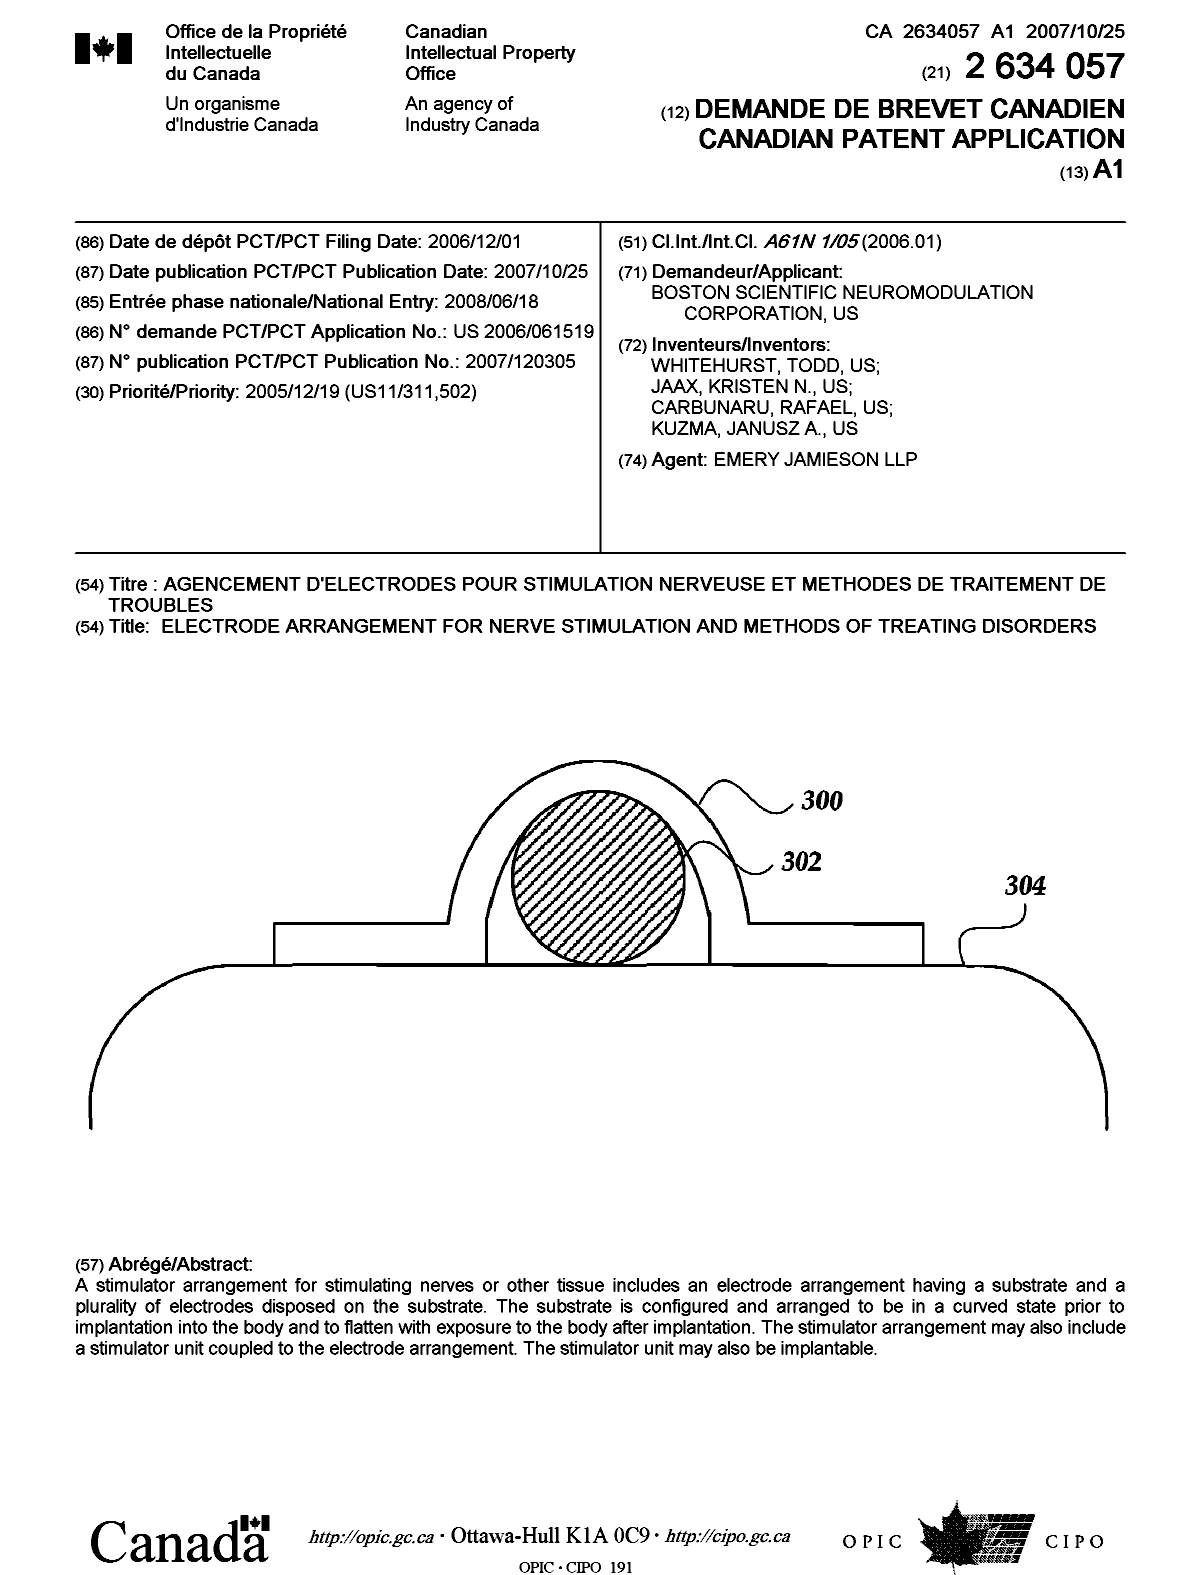 Document de brevet canadien 2634057. Page couverture 20081010. Image 1 de 1